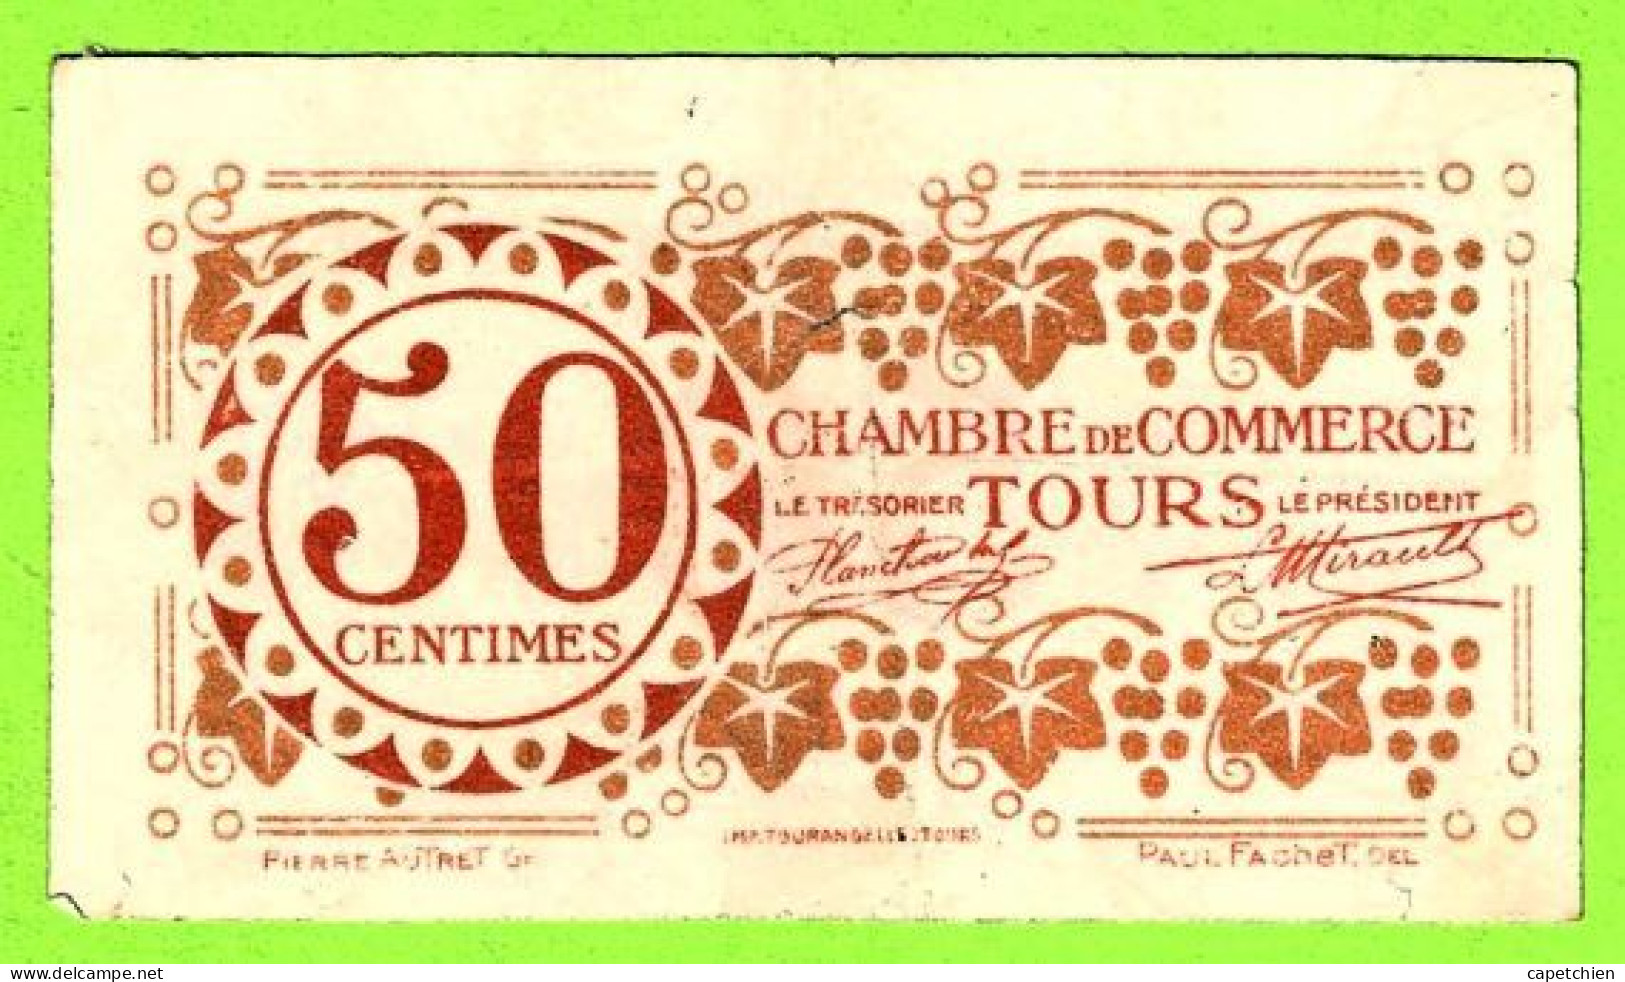 FRANCE / CHAMBRE De COMMERCE De TOURS / 50 CENTIMES/ 27 DECEMBRE 1920 / 461,639 / SERIE 3eme - Chambre De Commerce